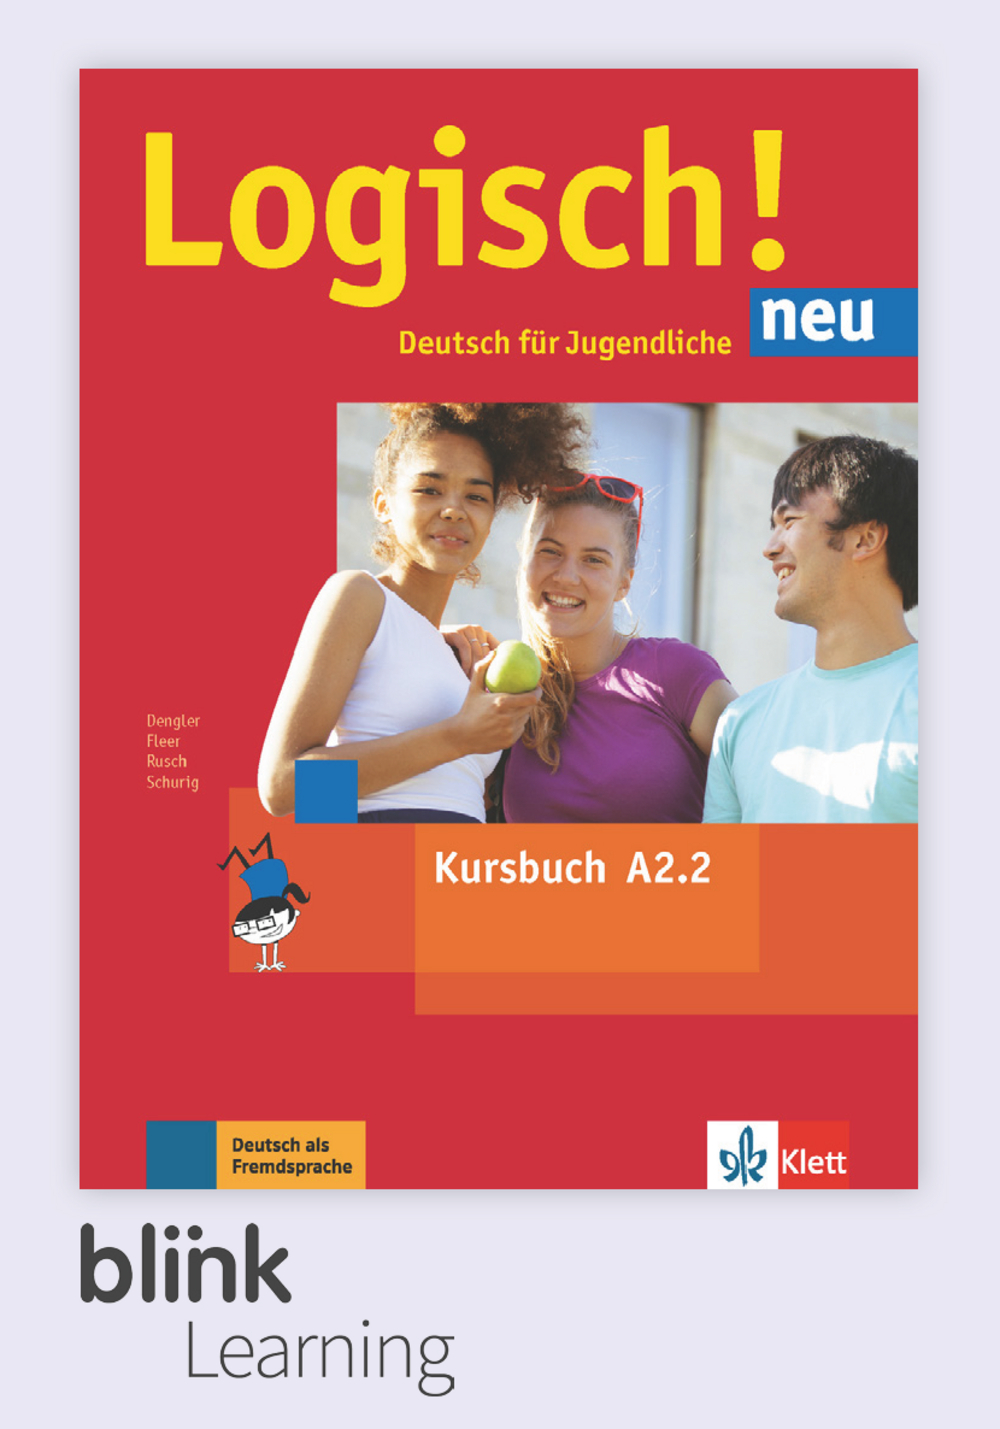 Logisch! neu A2.2 Digital Kursbuch fur Lernende / Цифровой учебник для ученика